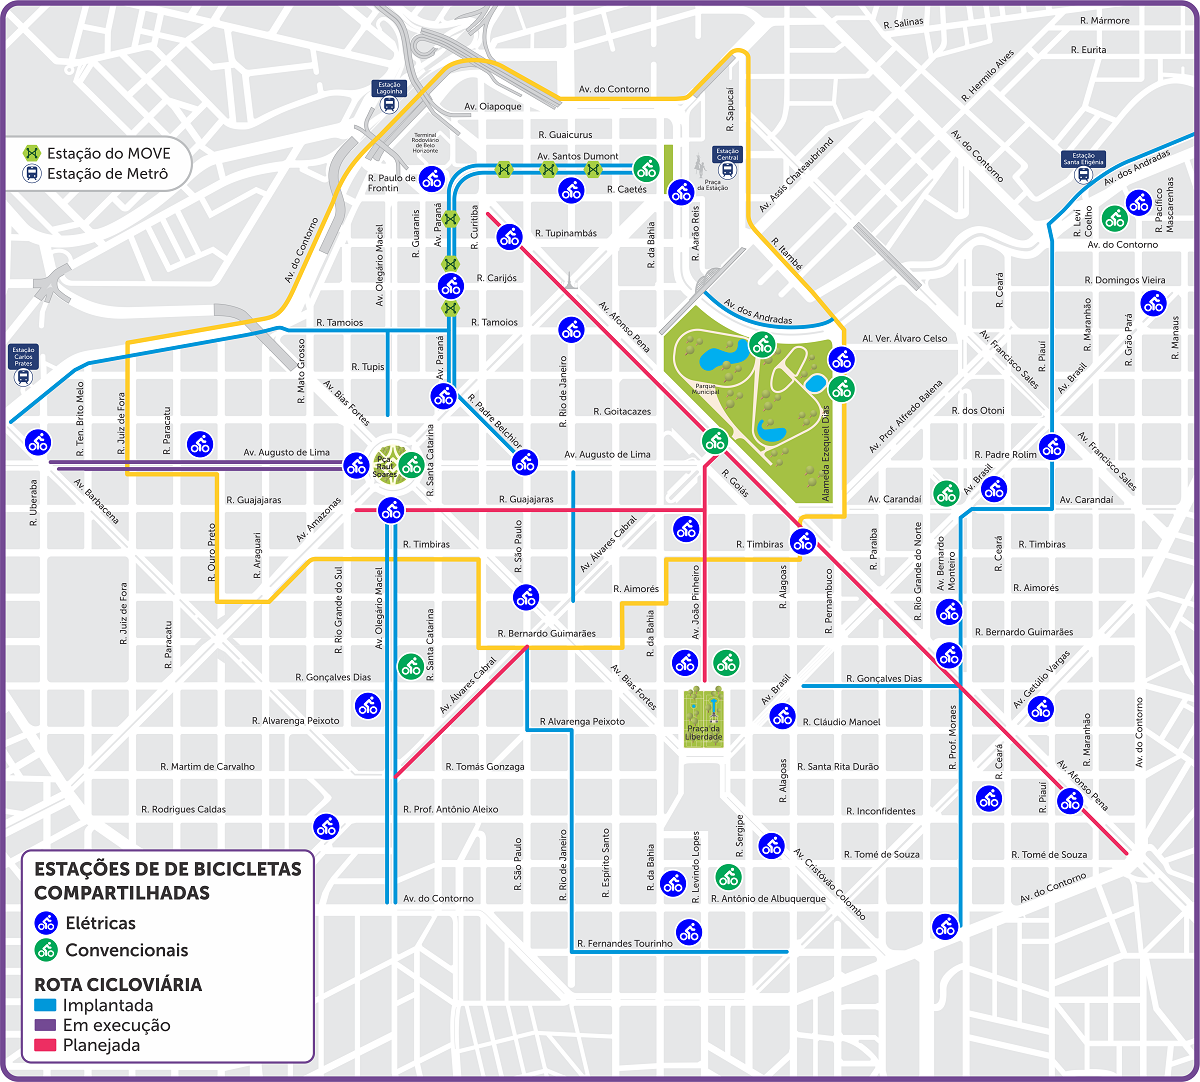 Mapa da malha cicloviária e pontos de bicicletas elétricas compartilhadas na região central de Belo Horizonte